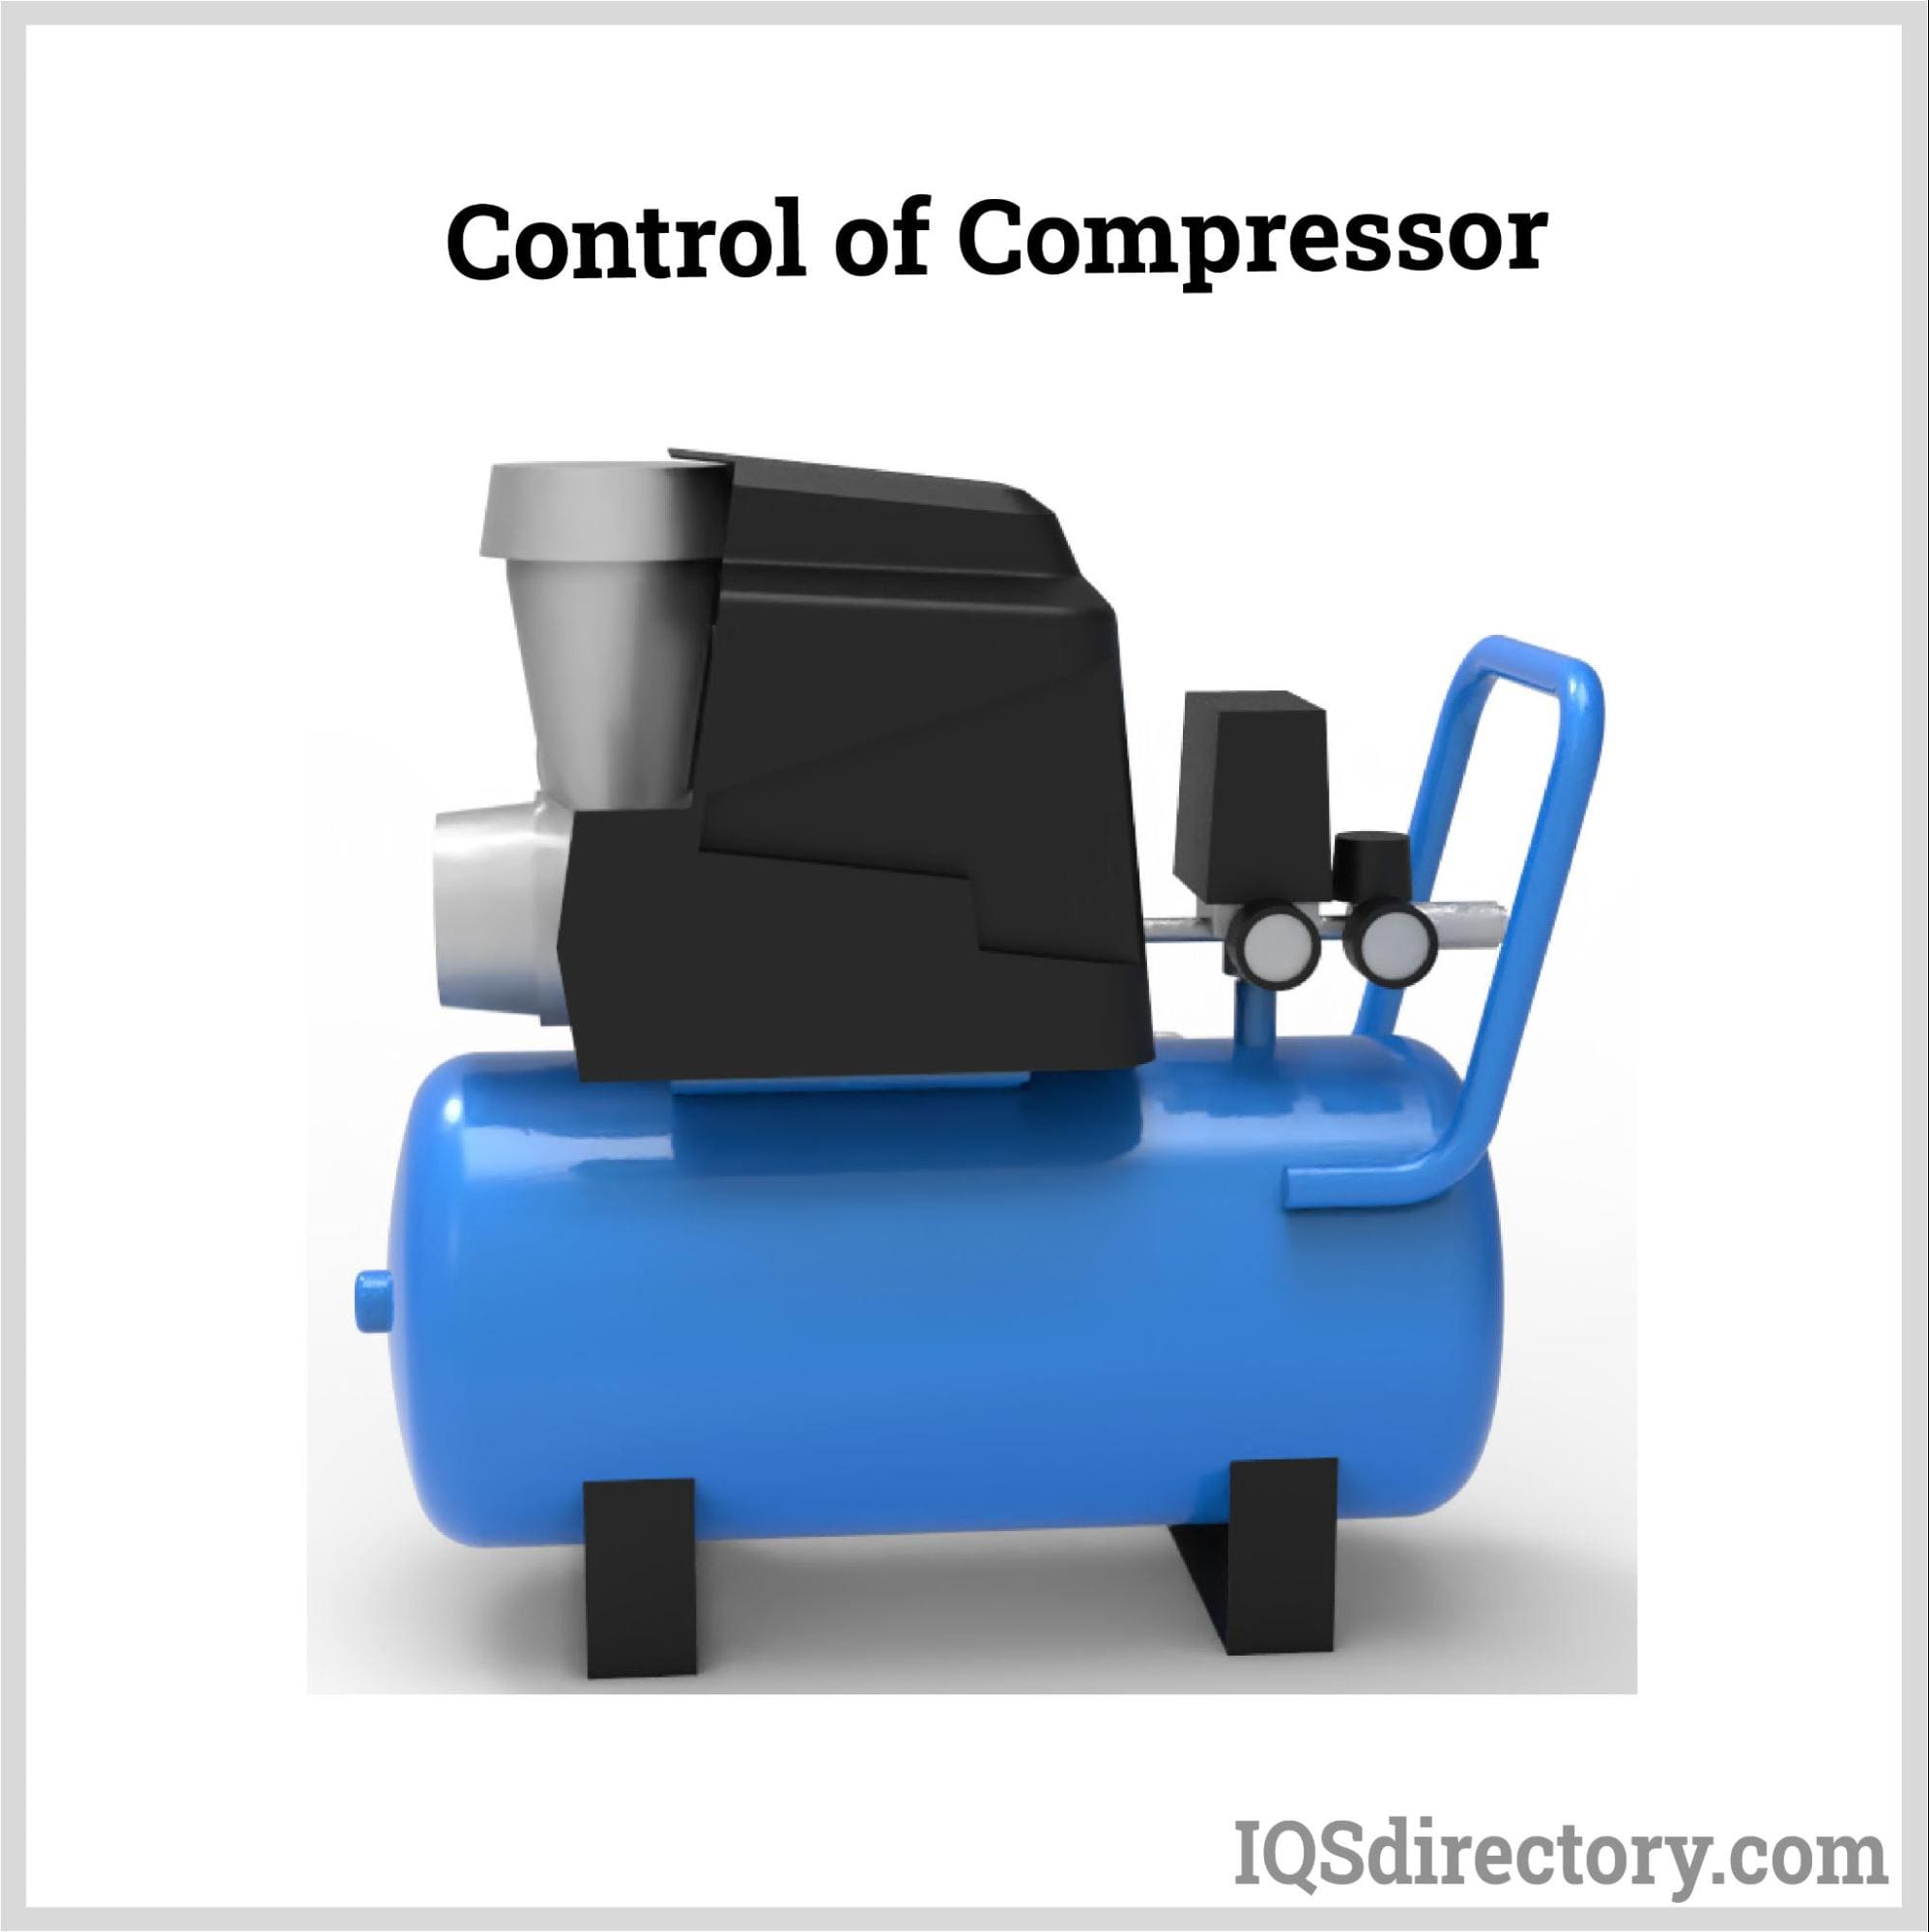 Control of Compressor